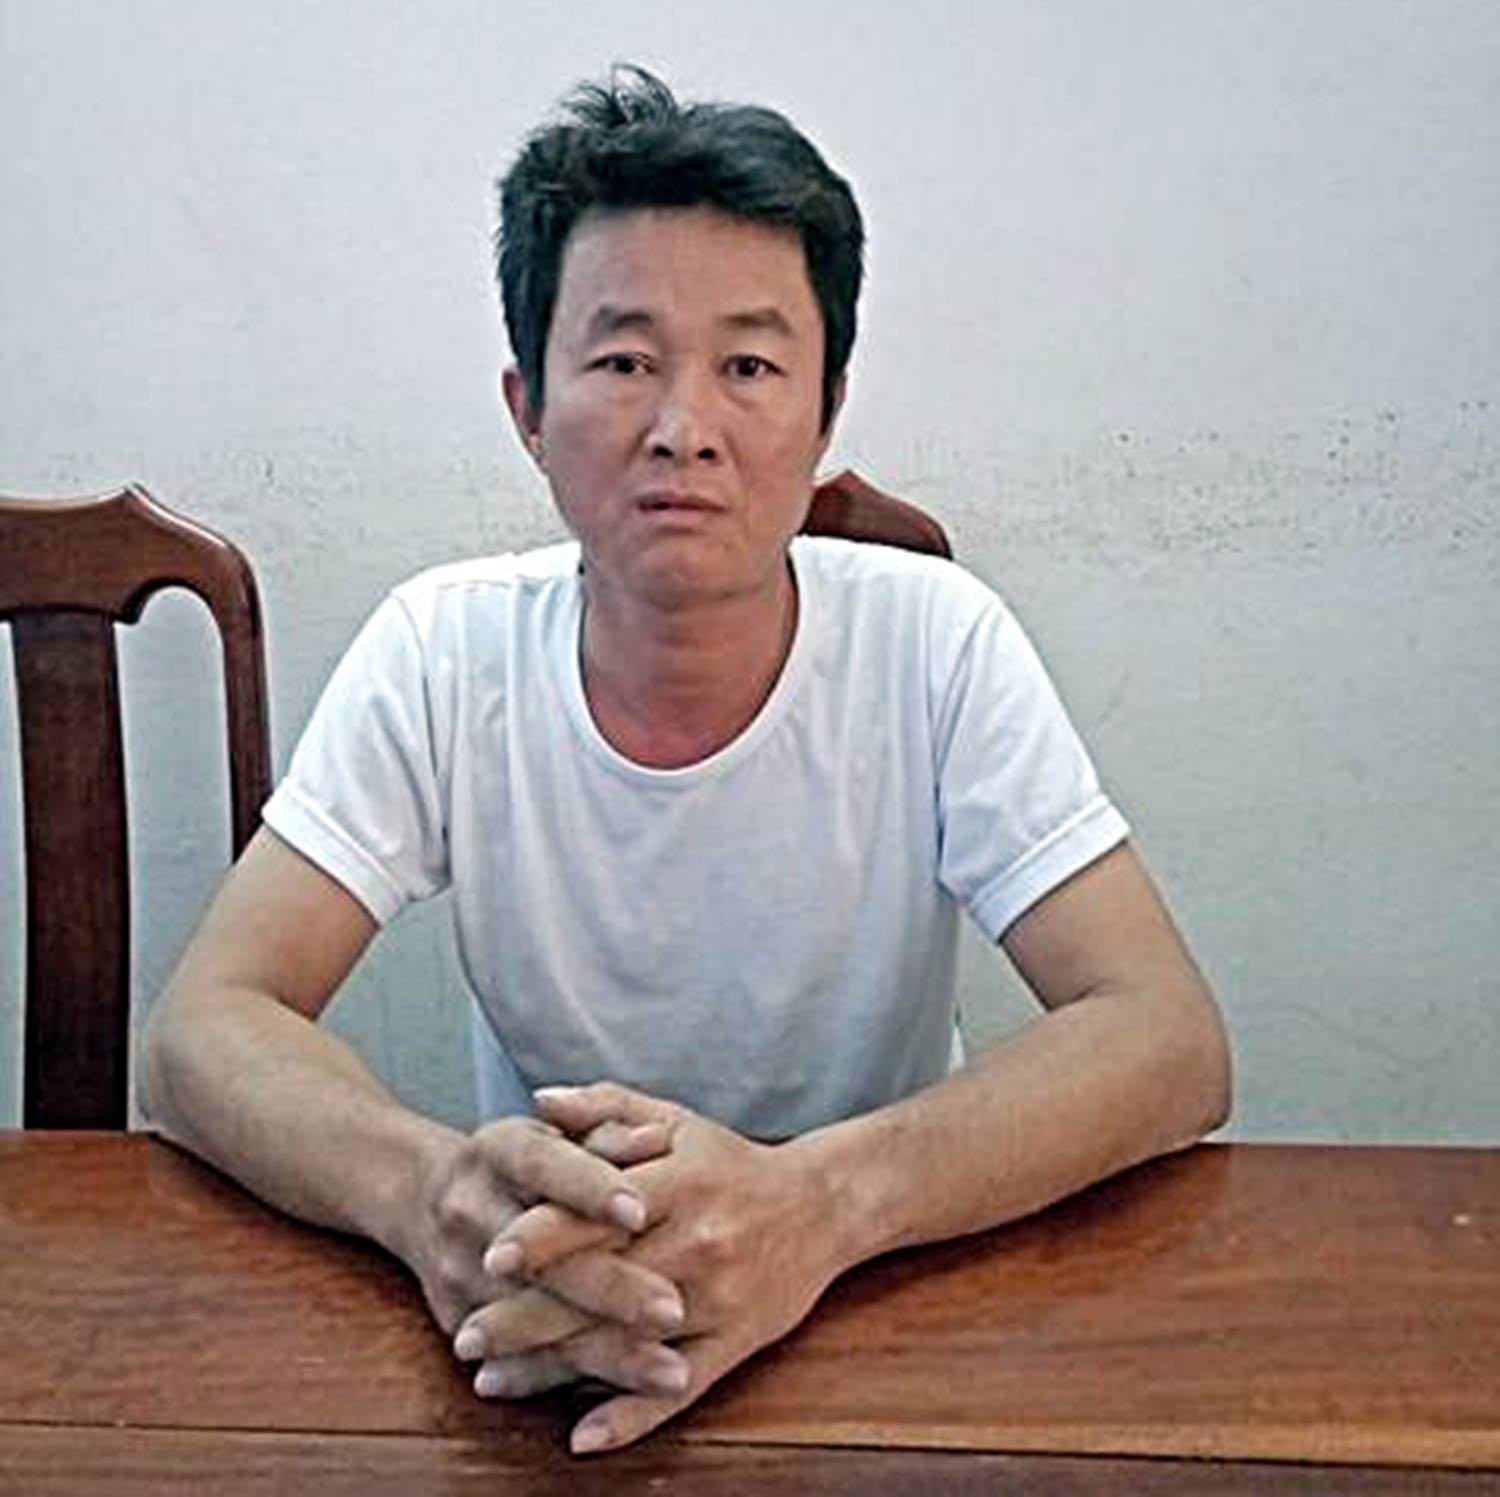 Lời khai của kẻ đến nhà xin cơm ăn rồi ra tay sát hại bác họ 70 tuổi ở Quảng Nam - Ảnh 1.